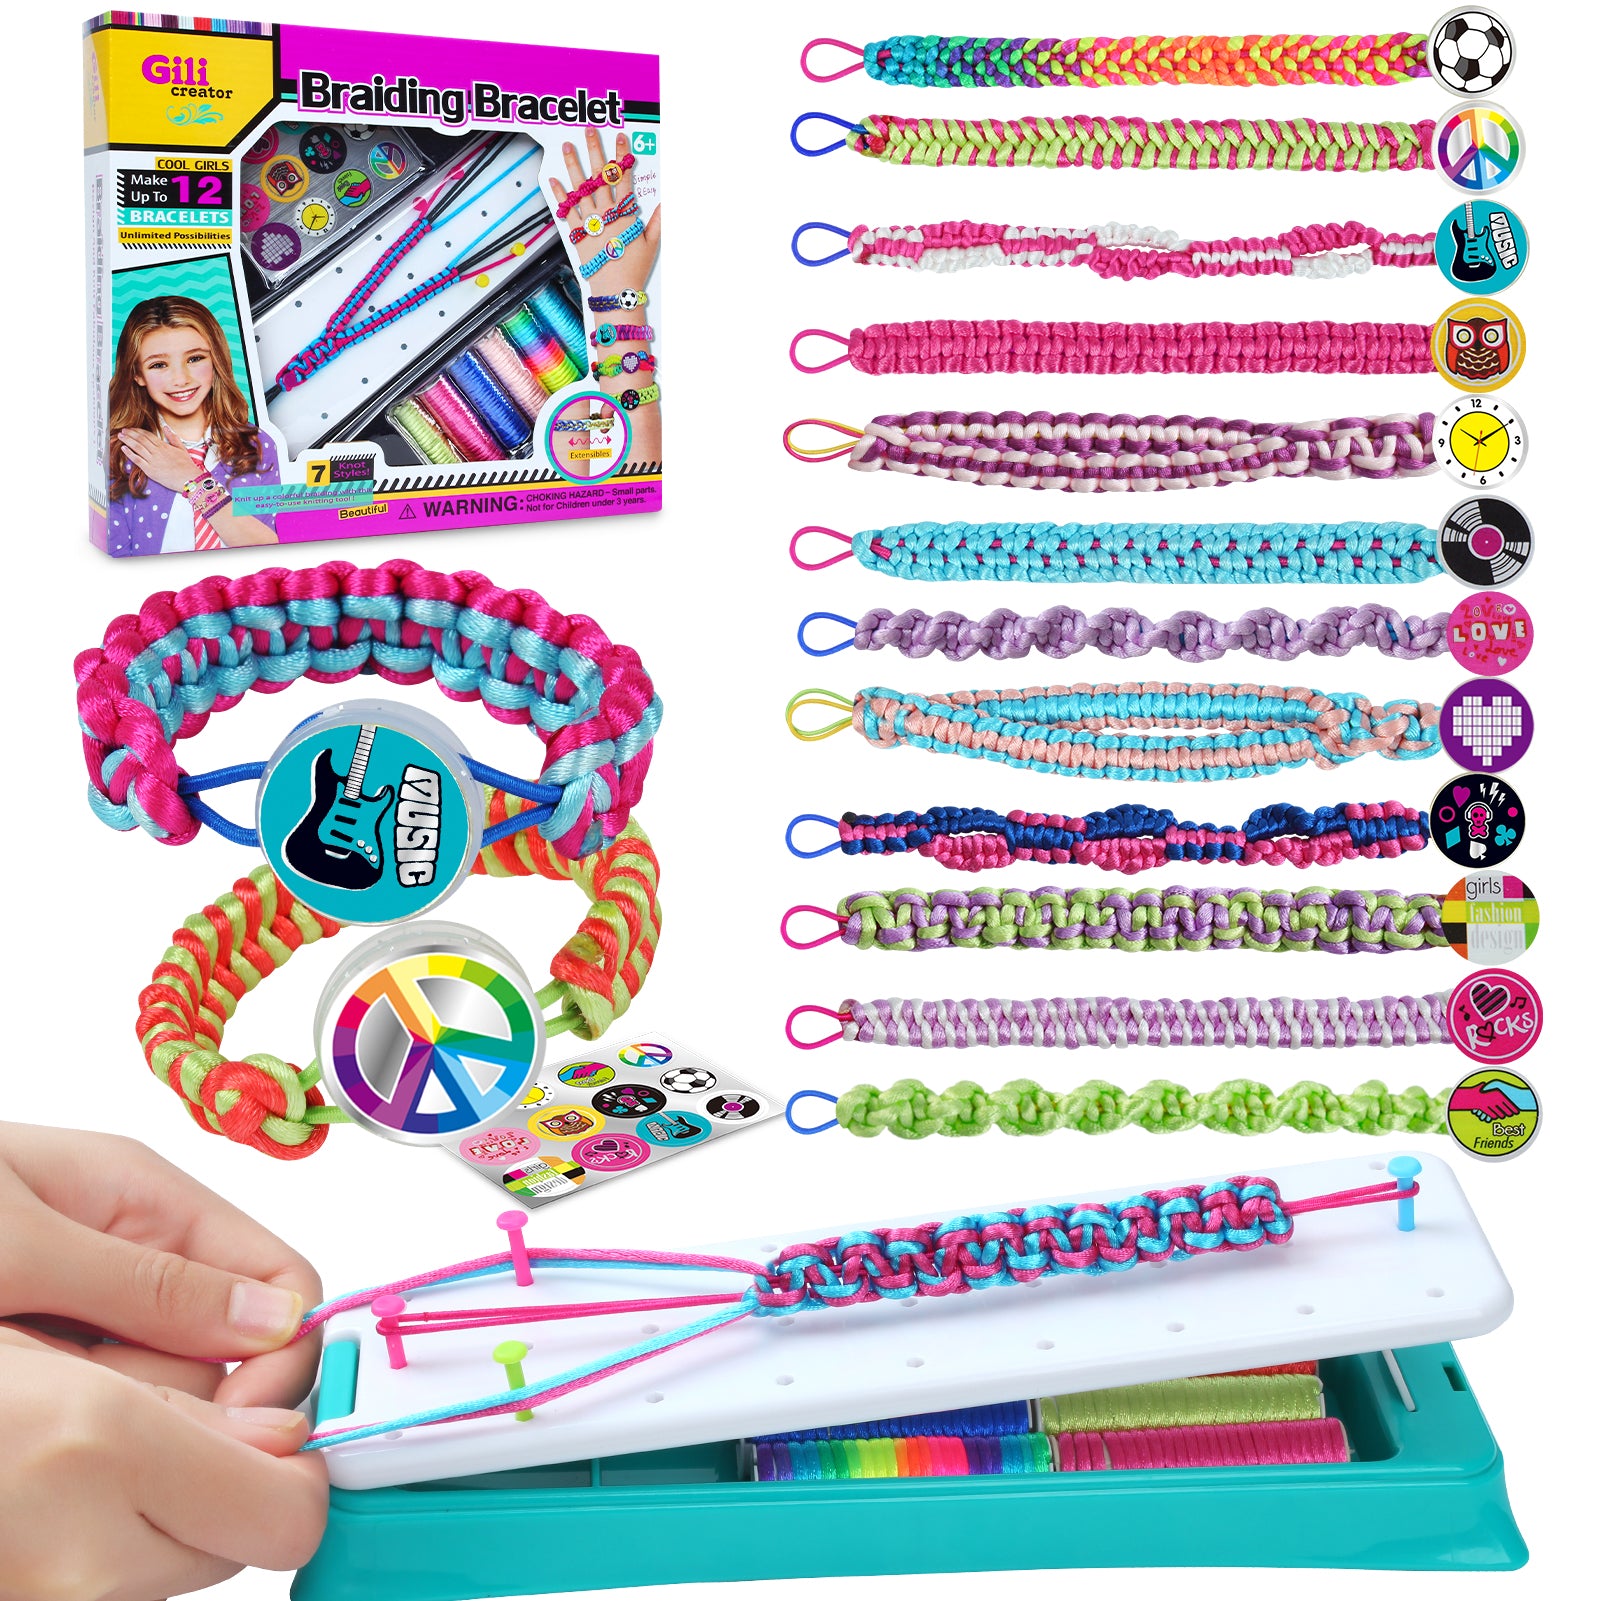 Friendship Bracelet Making Kit, Gift for 7 8 9 10 11 12 Year Old Girls,  Crafts for Kids Ages 8-12, Friendship Bracelets Kits for Girl Toys Age 7-8